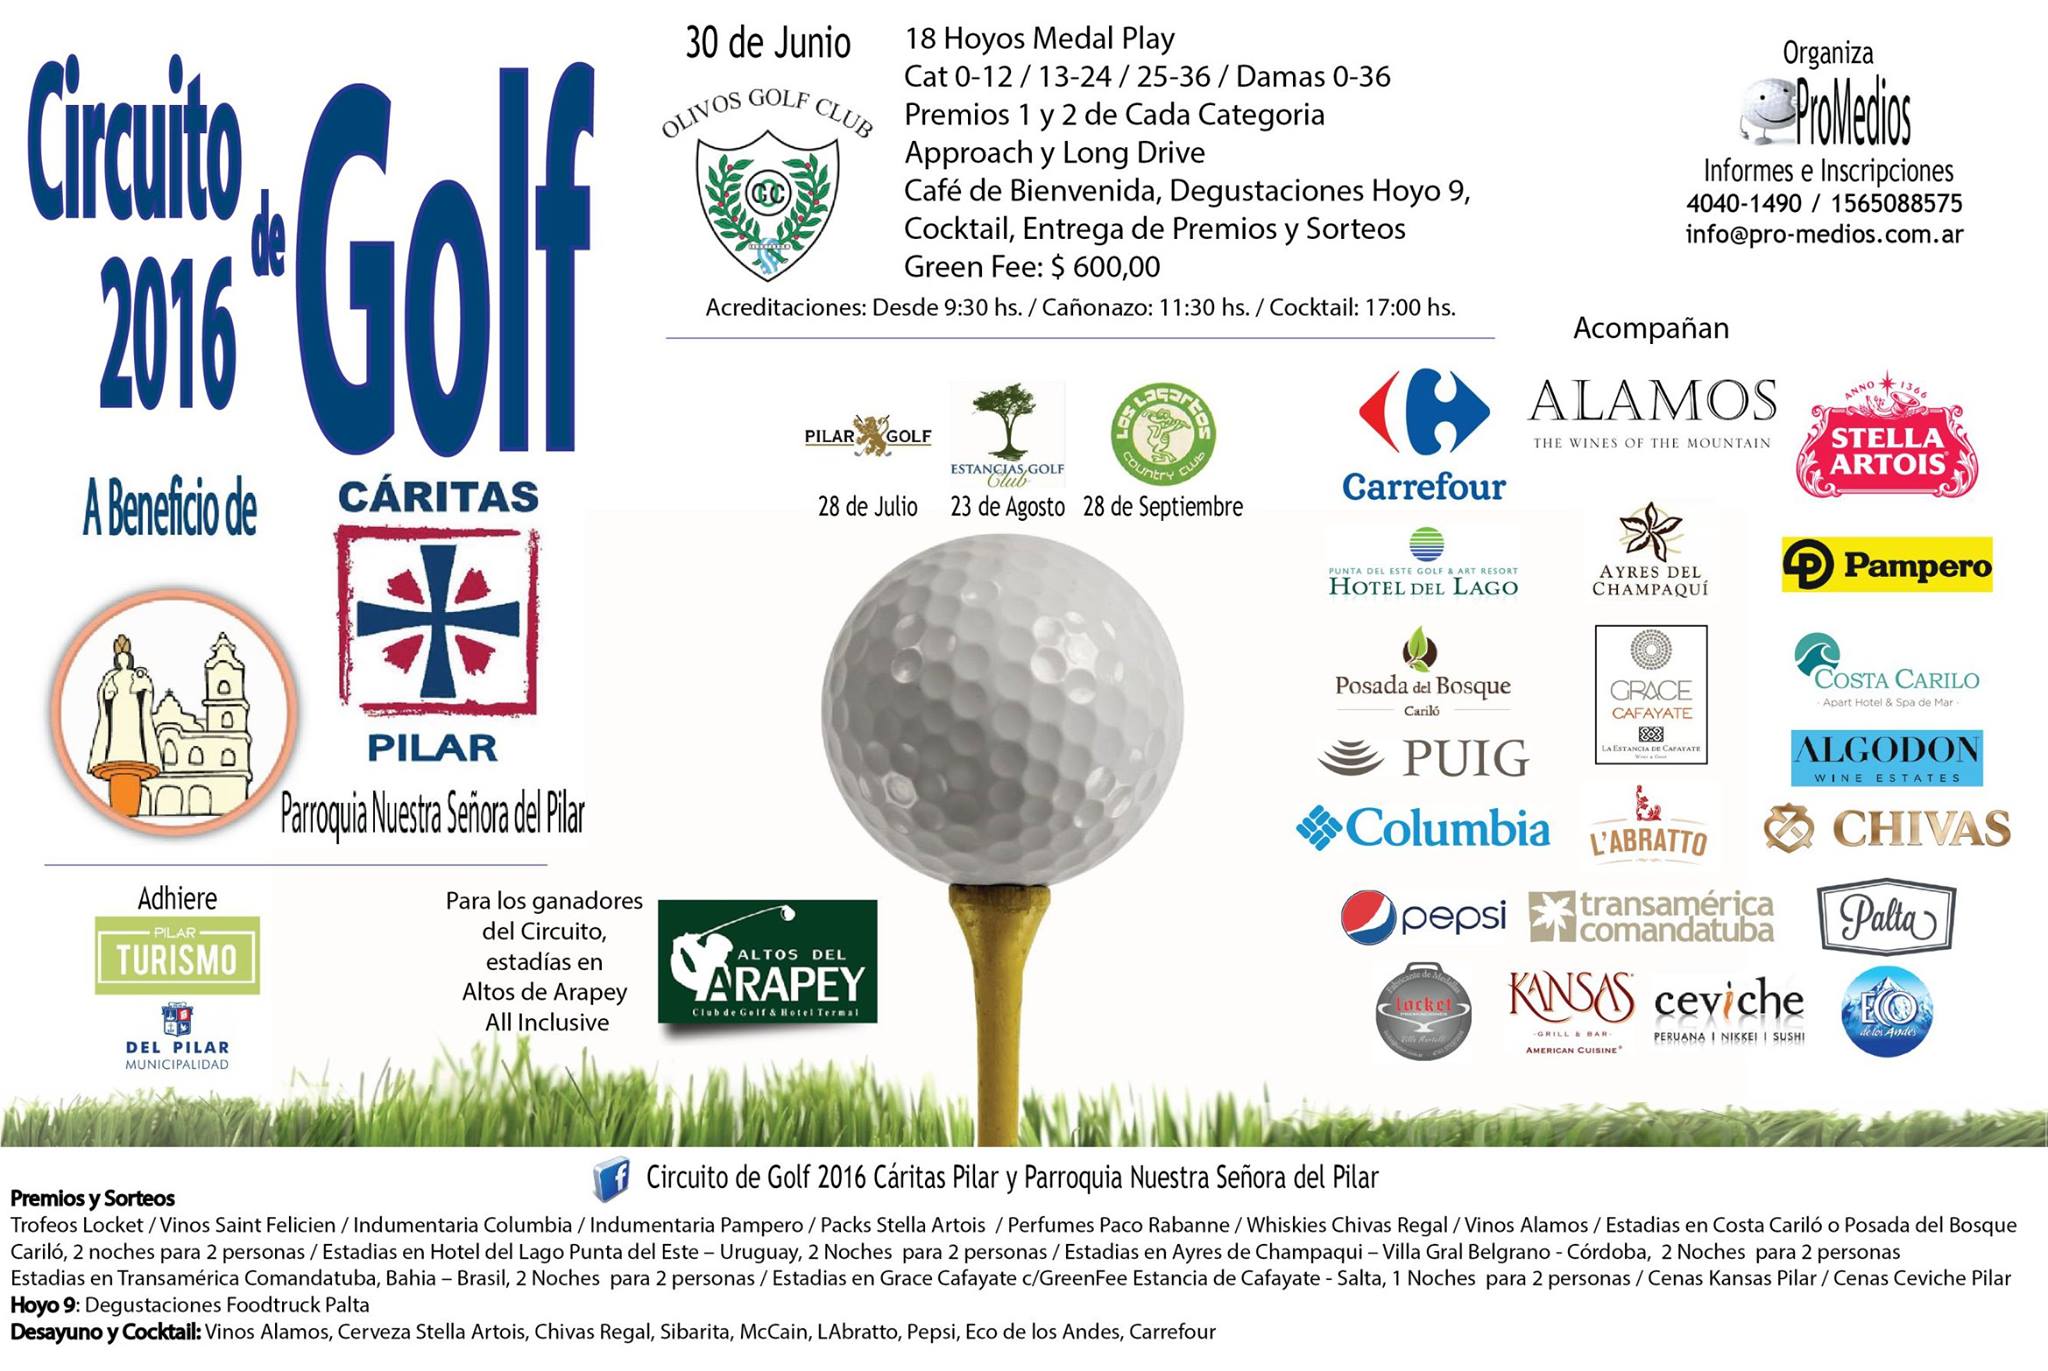 30 de junio: Torneo de Golf a beneficio de Cáritas , en Pilar